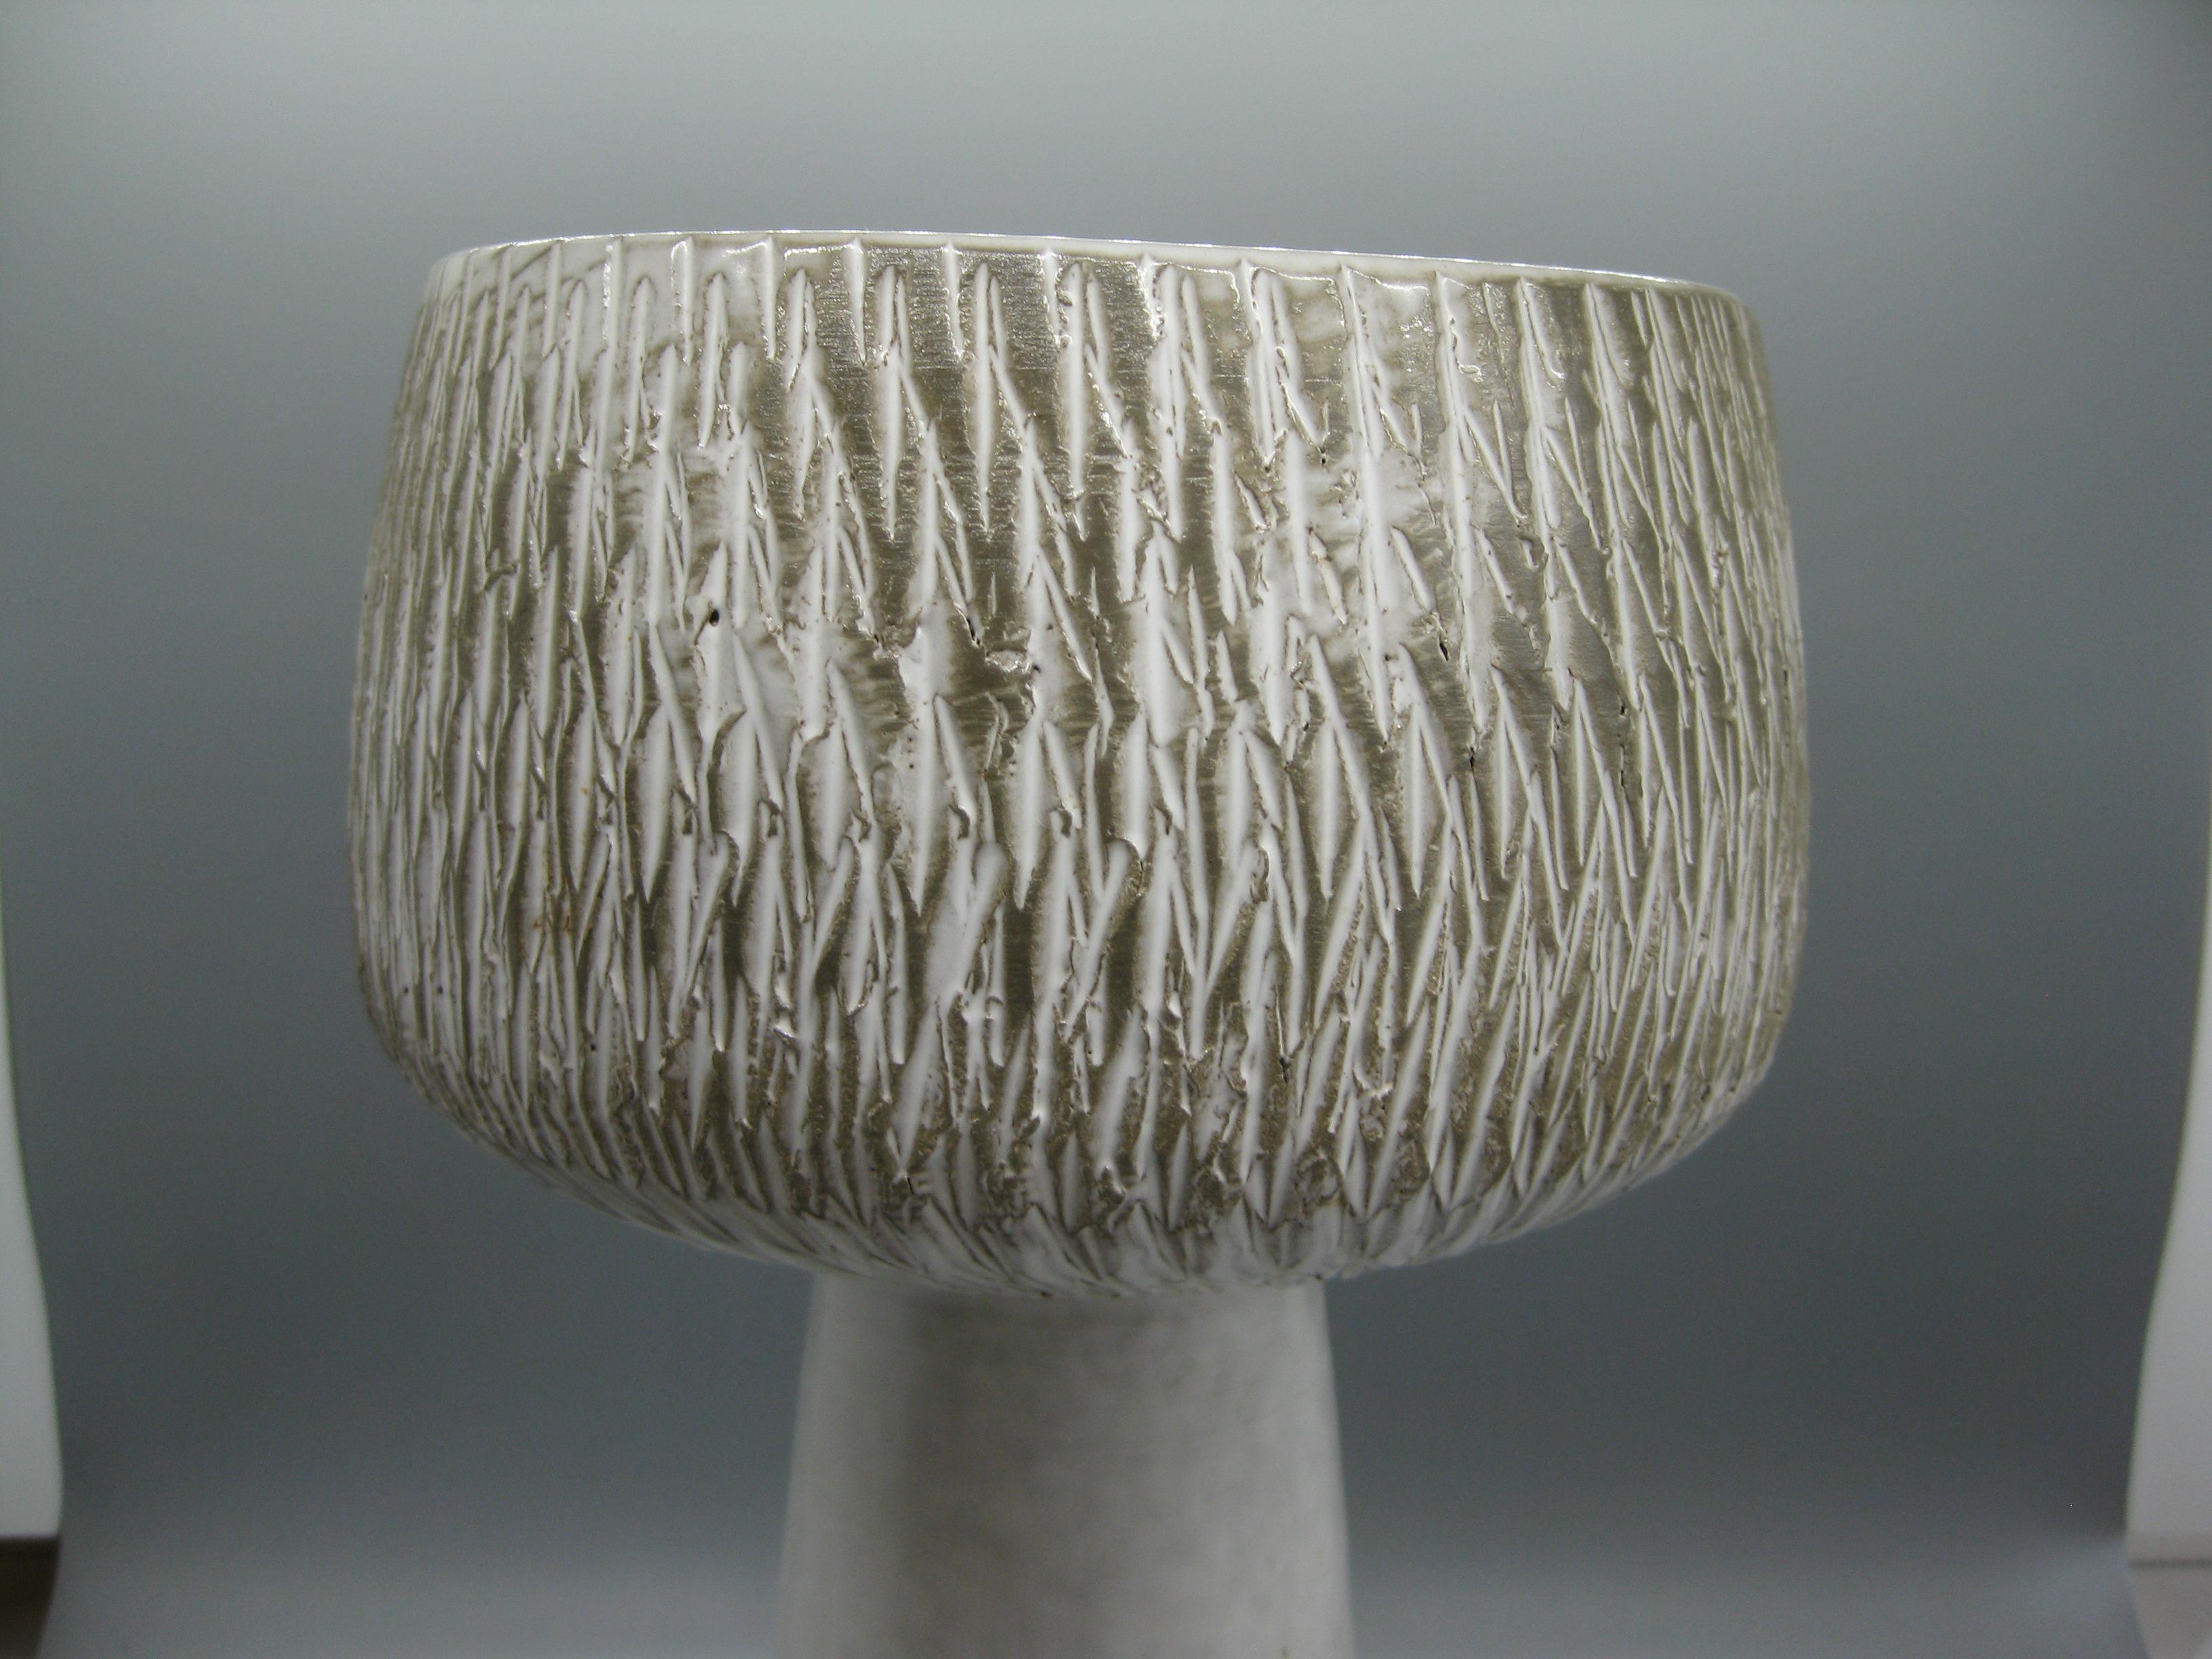 Remarquable vase/récipient à piédestal en céramique/poterie japonaise moderniste Ikebana, vers les années 1960. Merveilleuse forme et conception. La surface supérieure est ornée de sgraffites. Signé en bas. En excellent état pour son âge. Aucun